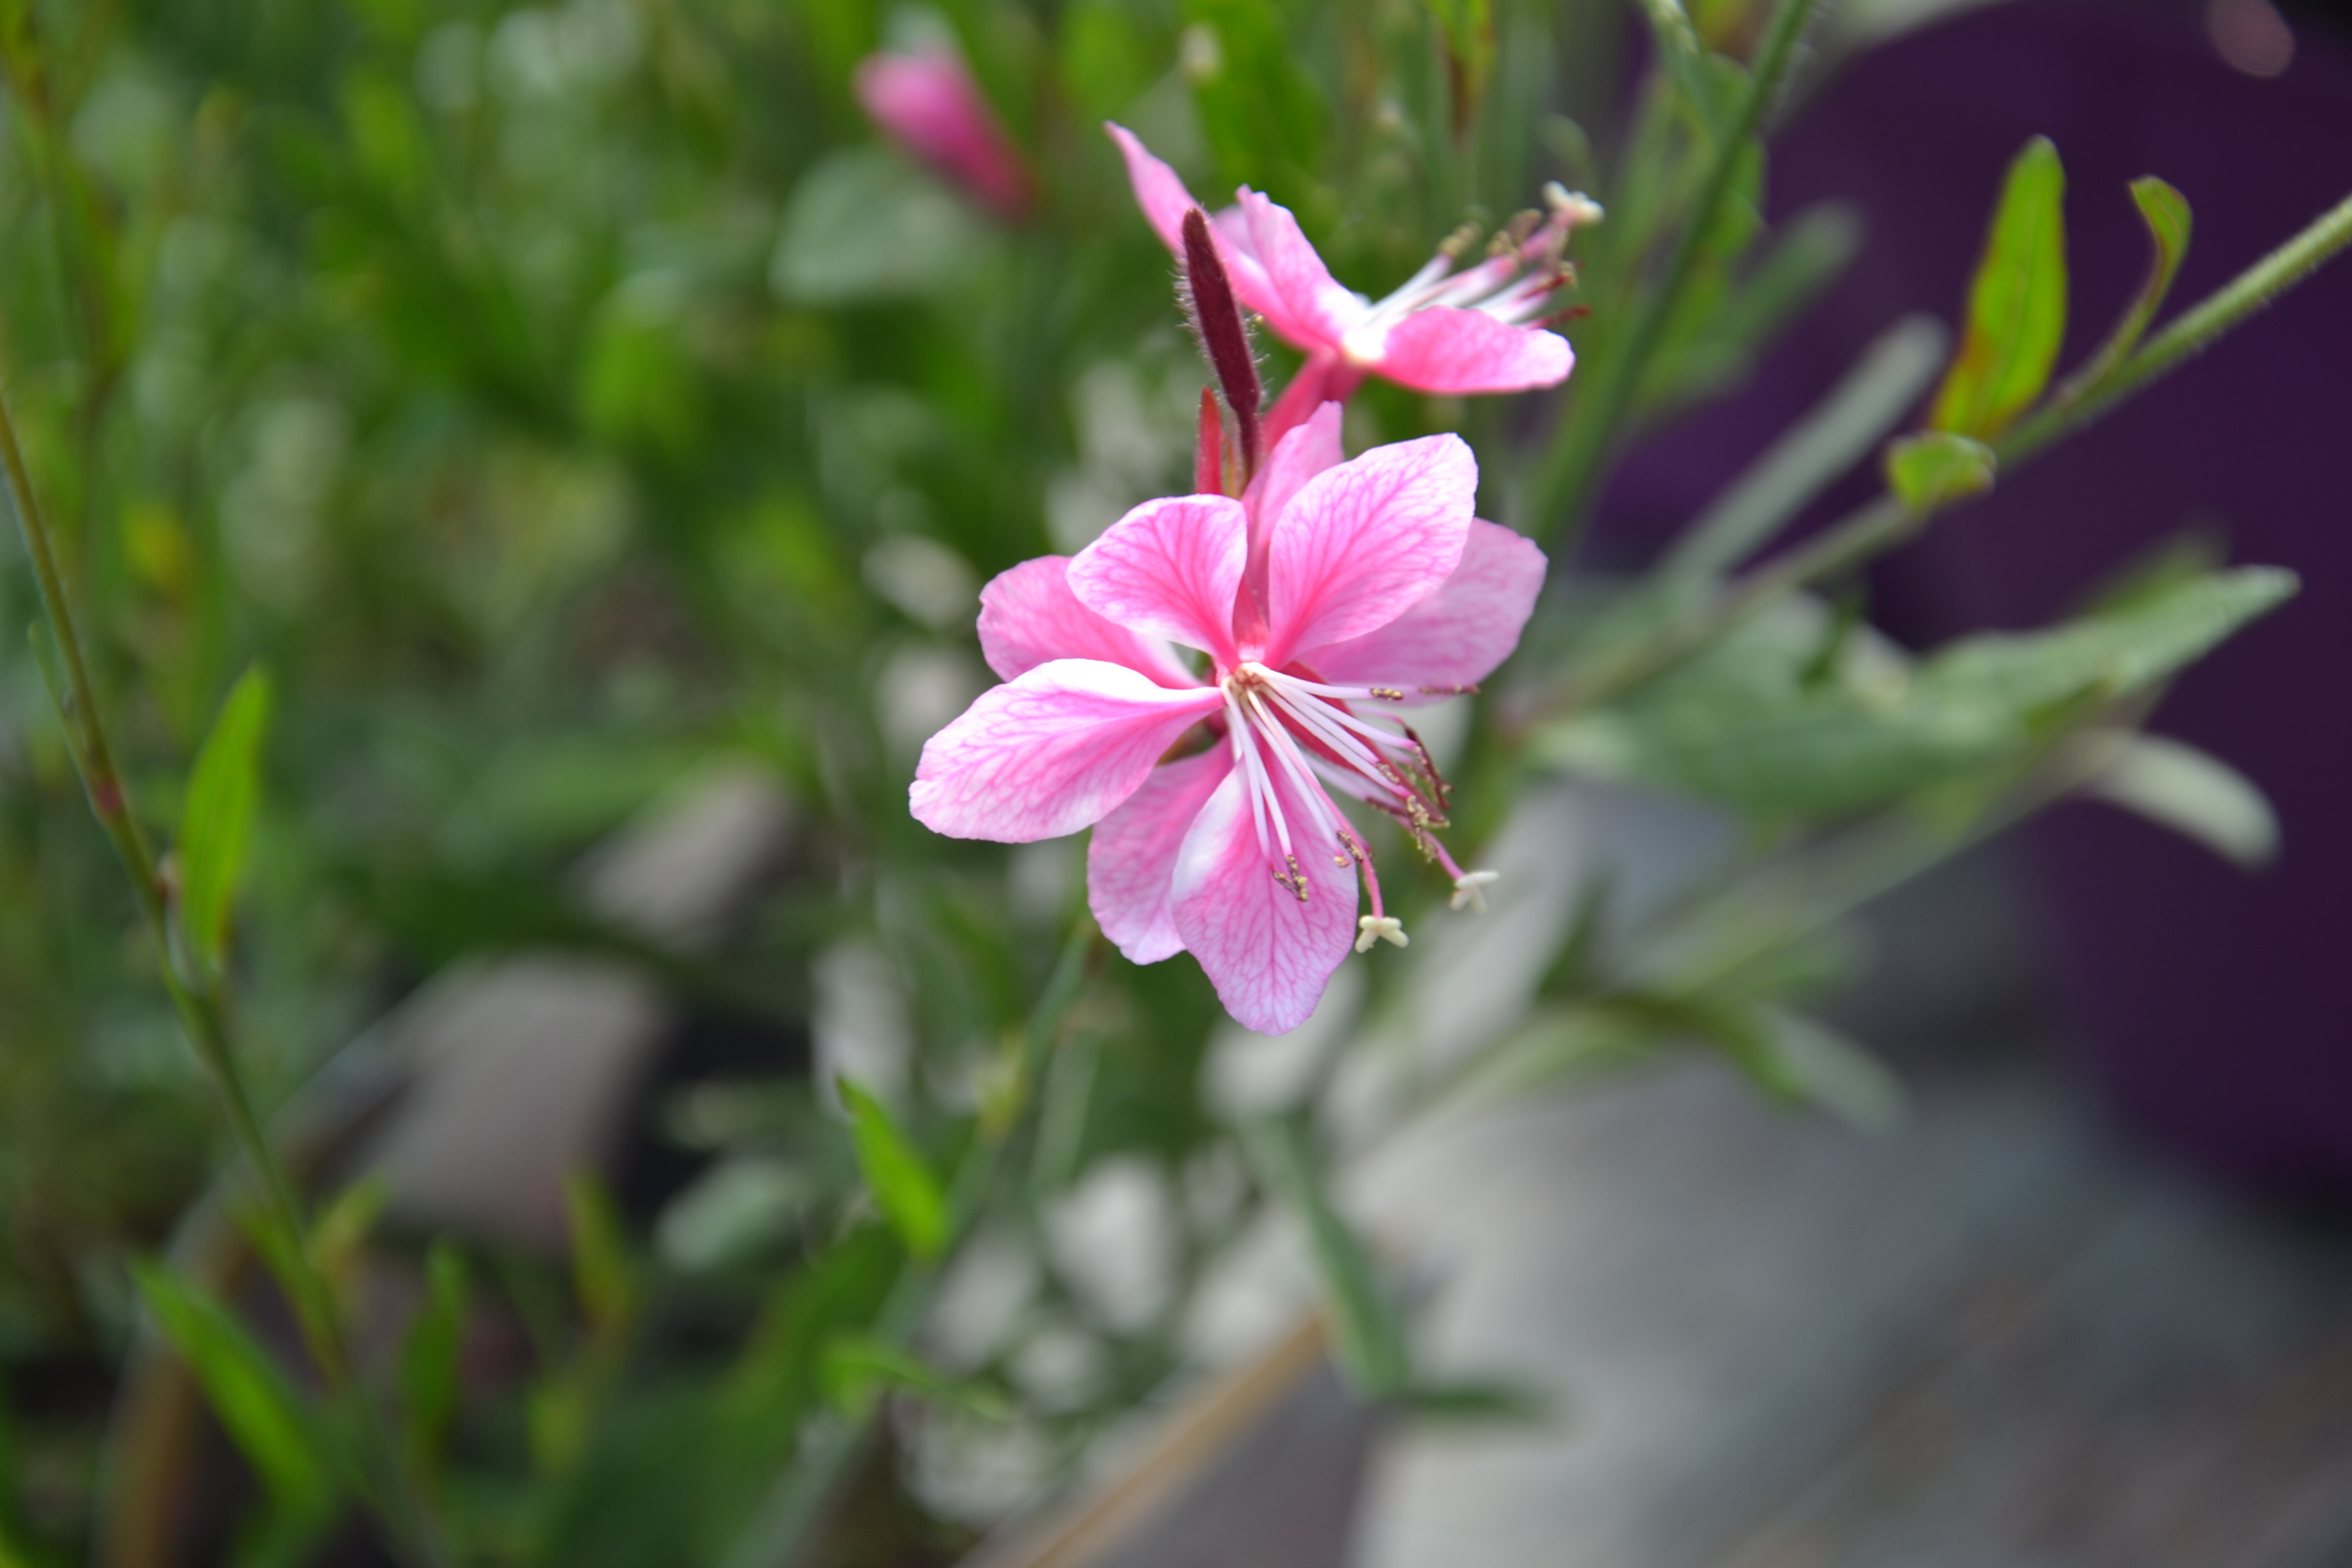 Prachtkerze (Gaura lindheimeri)
Die zierliche Pflanze mit buschigem hohem Wuchs trägt elegant überhängende Blütentrauben. An warmen, vollsonnigen, trockenen Gartenplätzen gedeiht sie sehr gut.